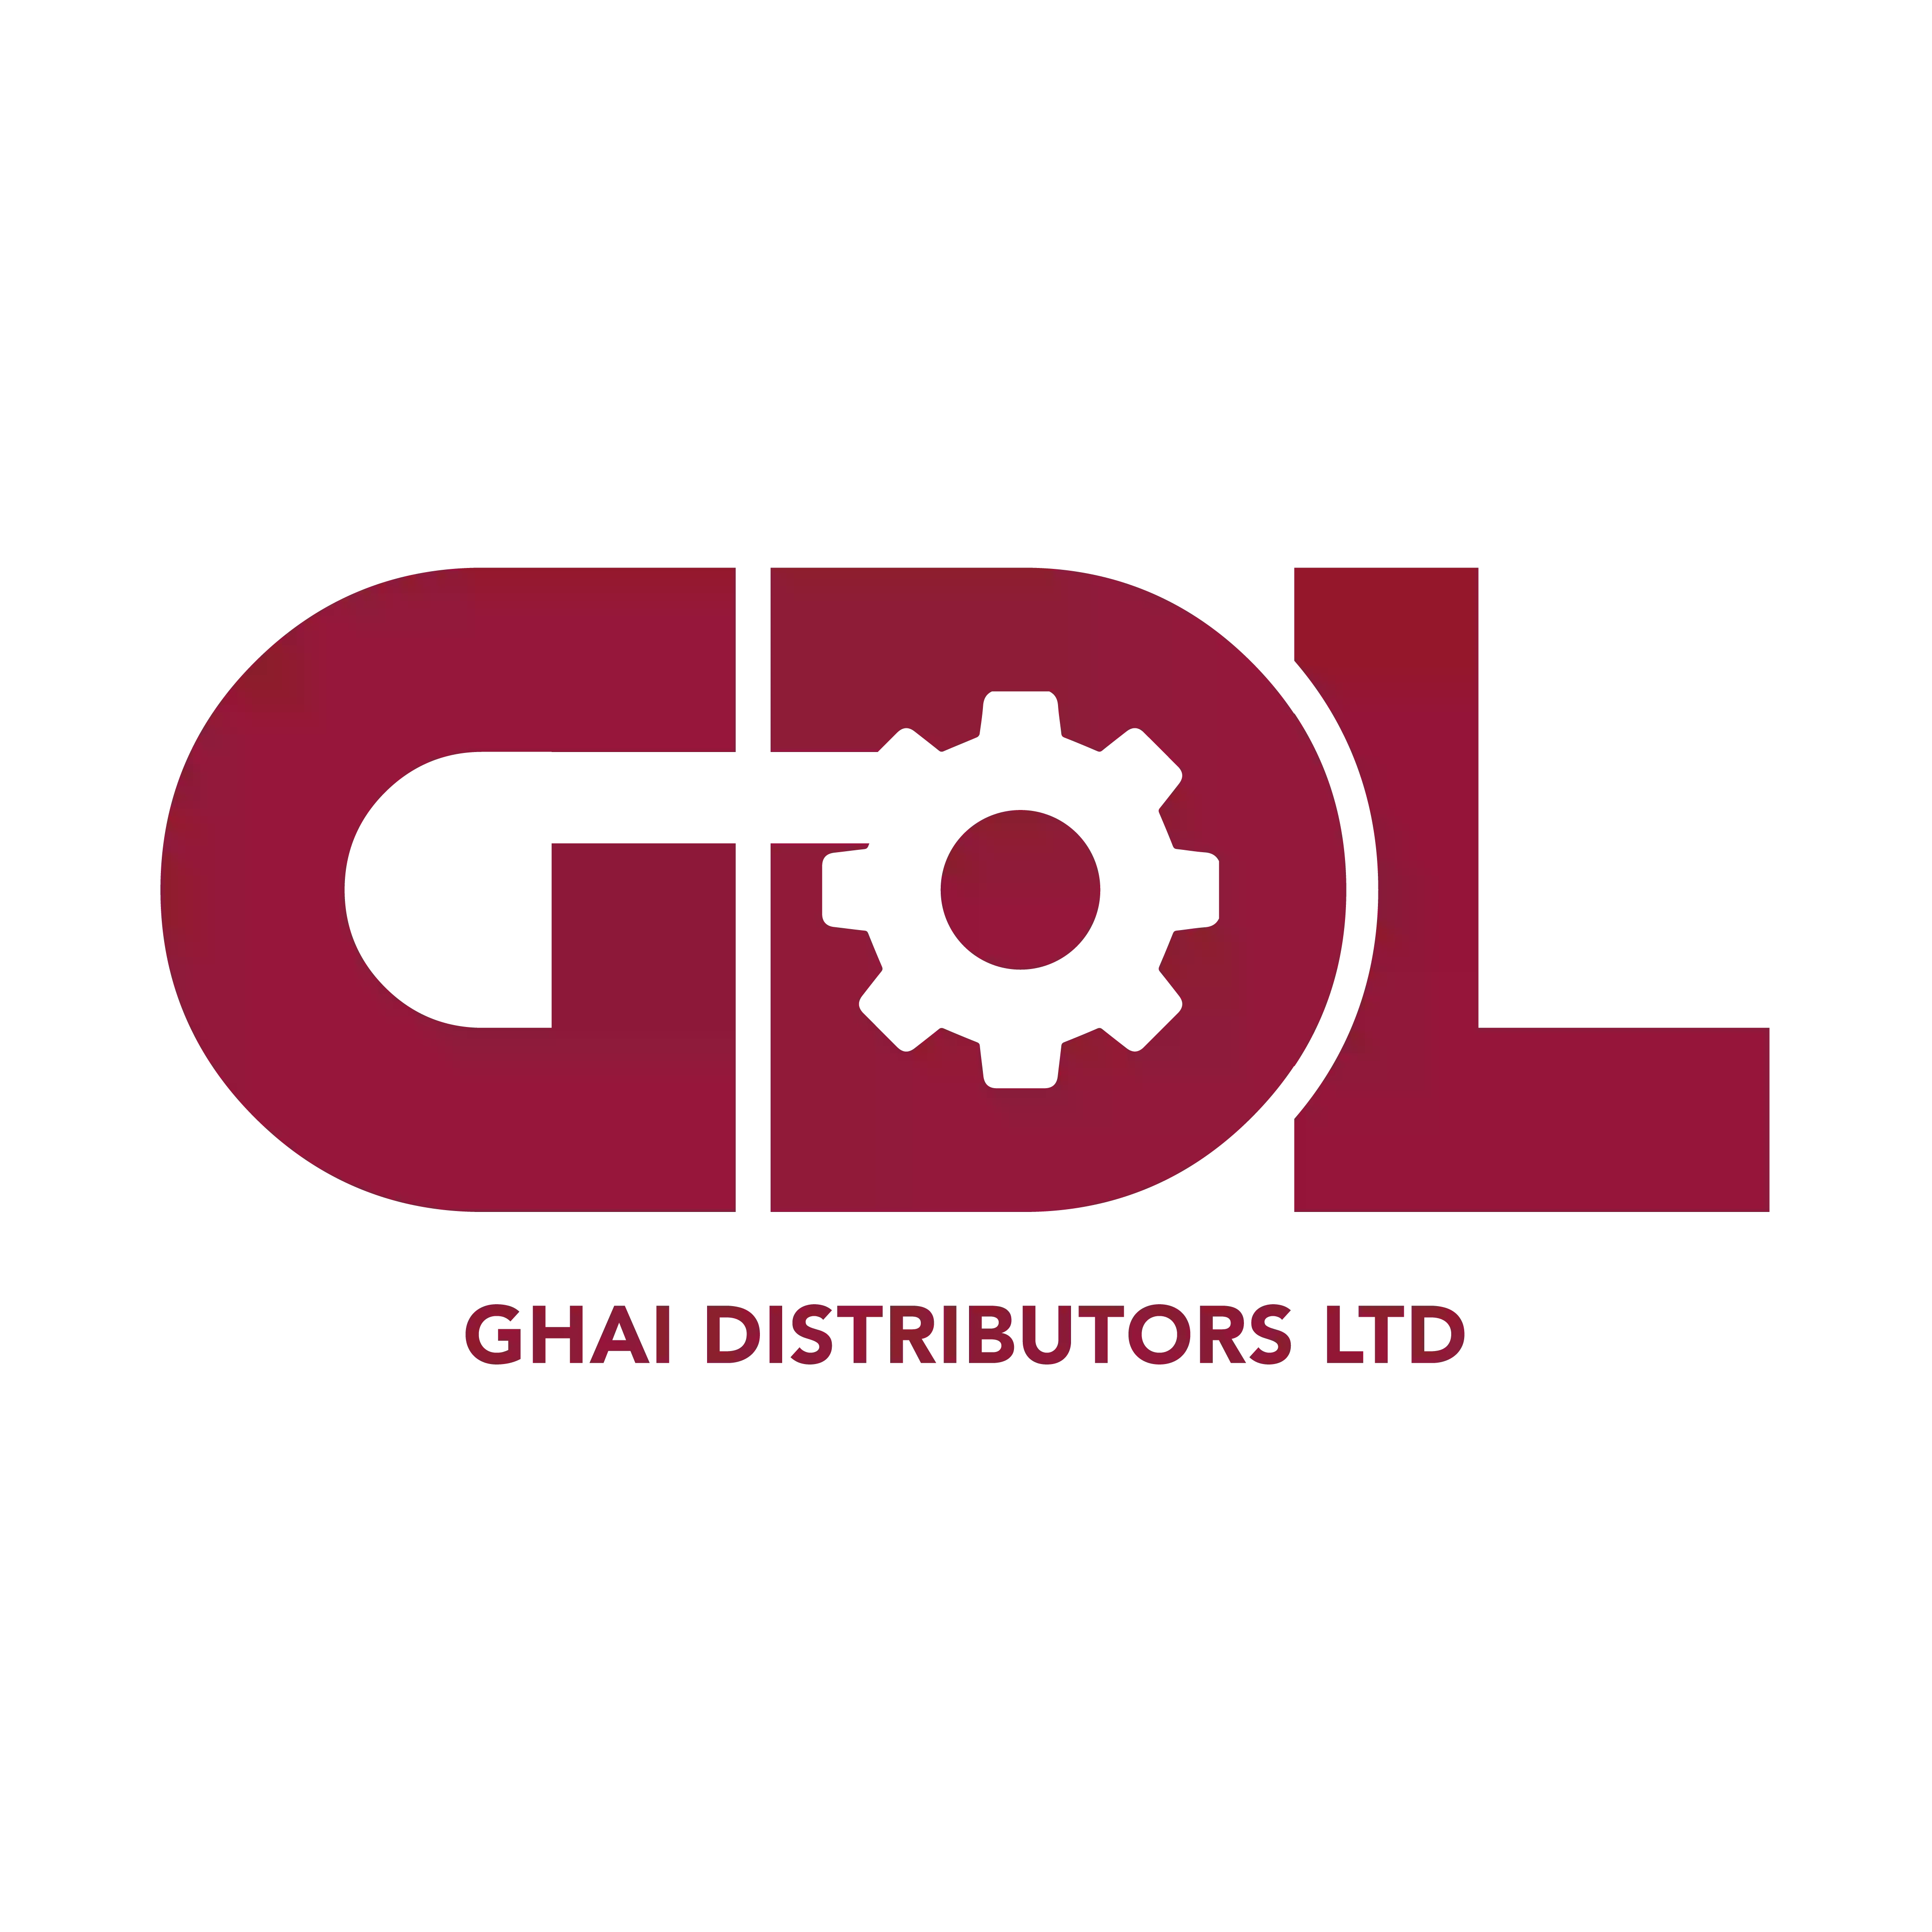 Ghai Distributors Ltd